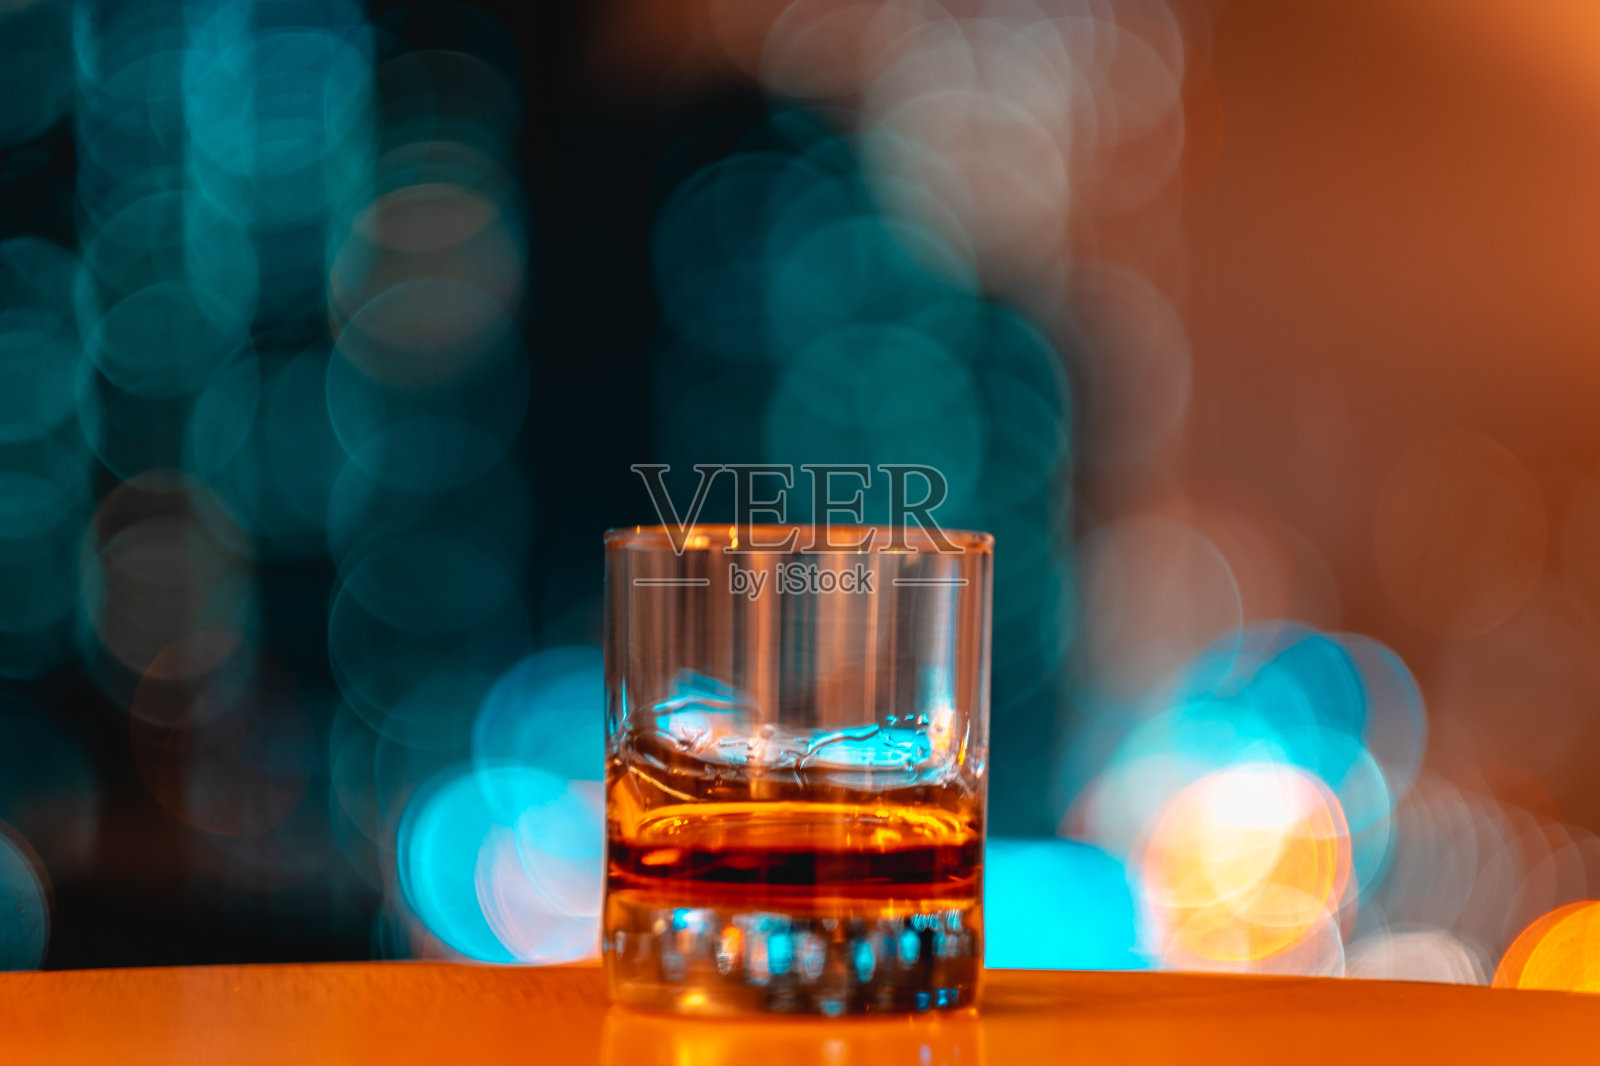 玻璃杯里的威士忌照片摄影图片